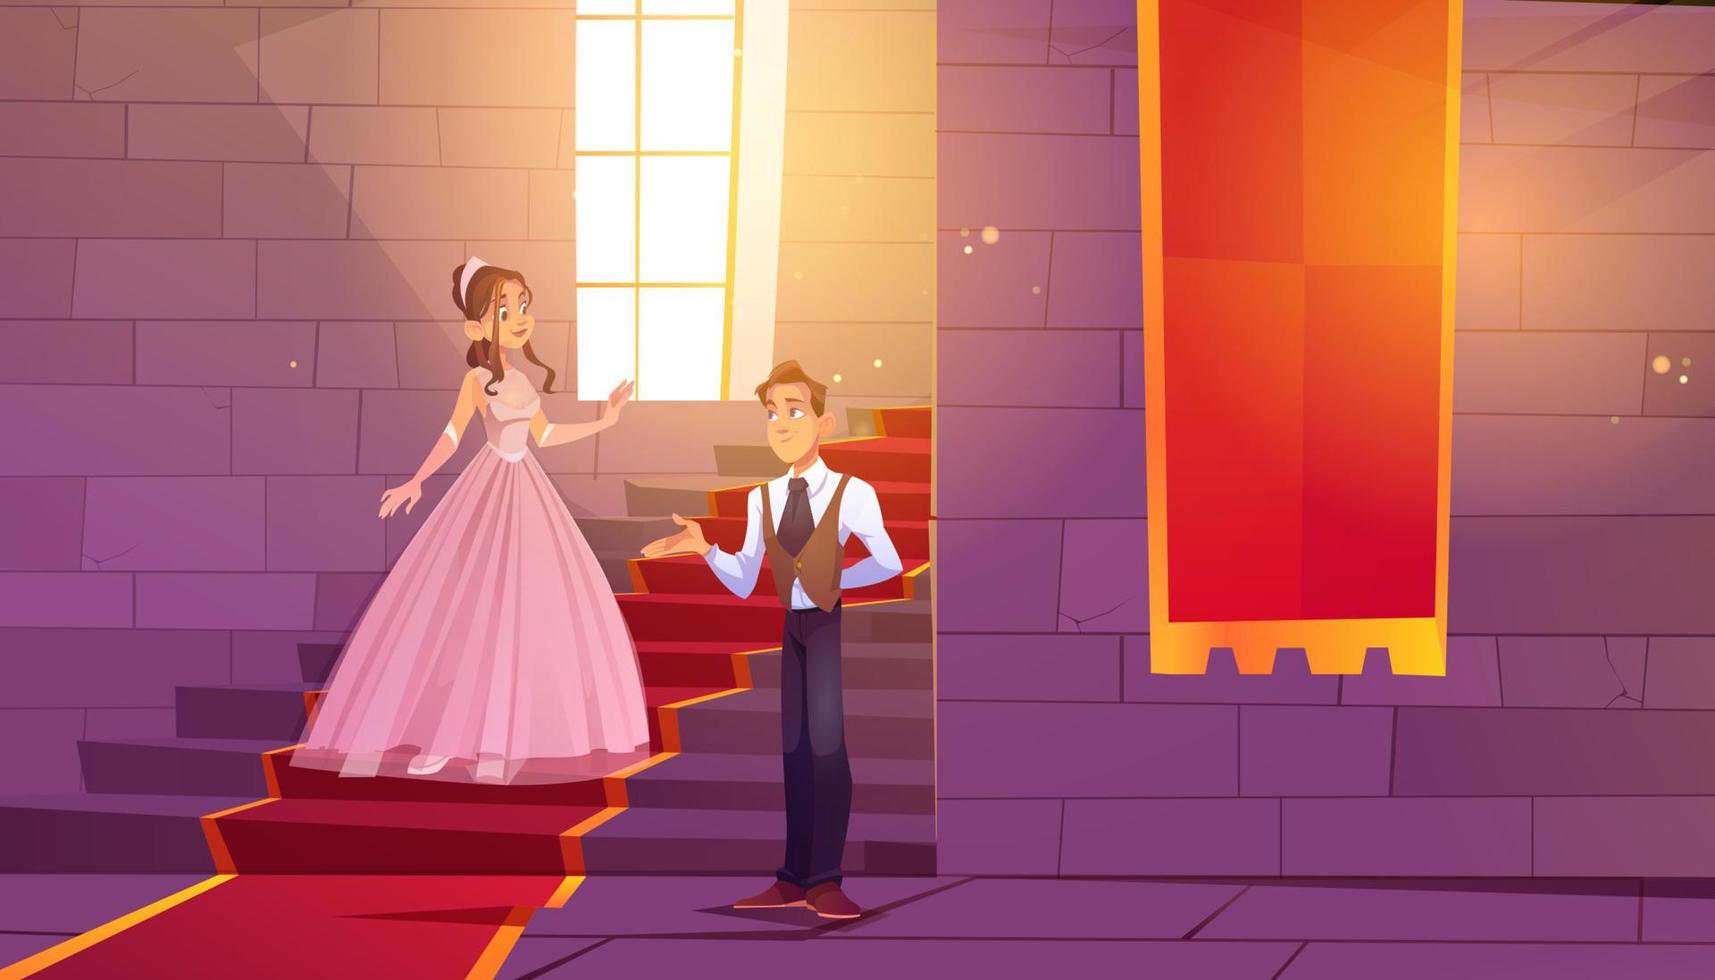 le prince invite la princesse à danser dans la salle du château vecteur